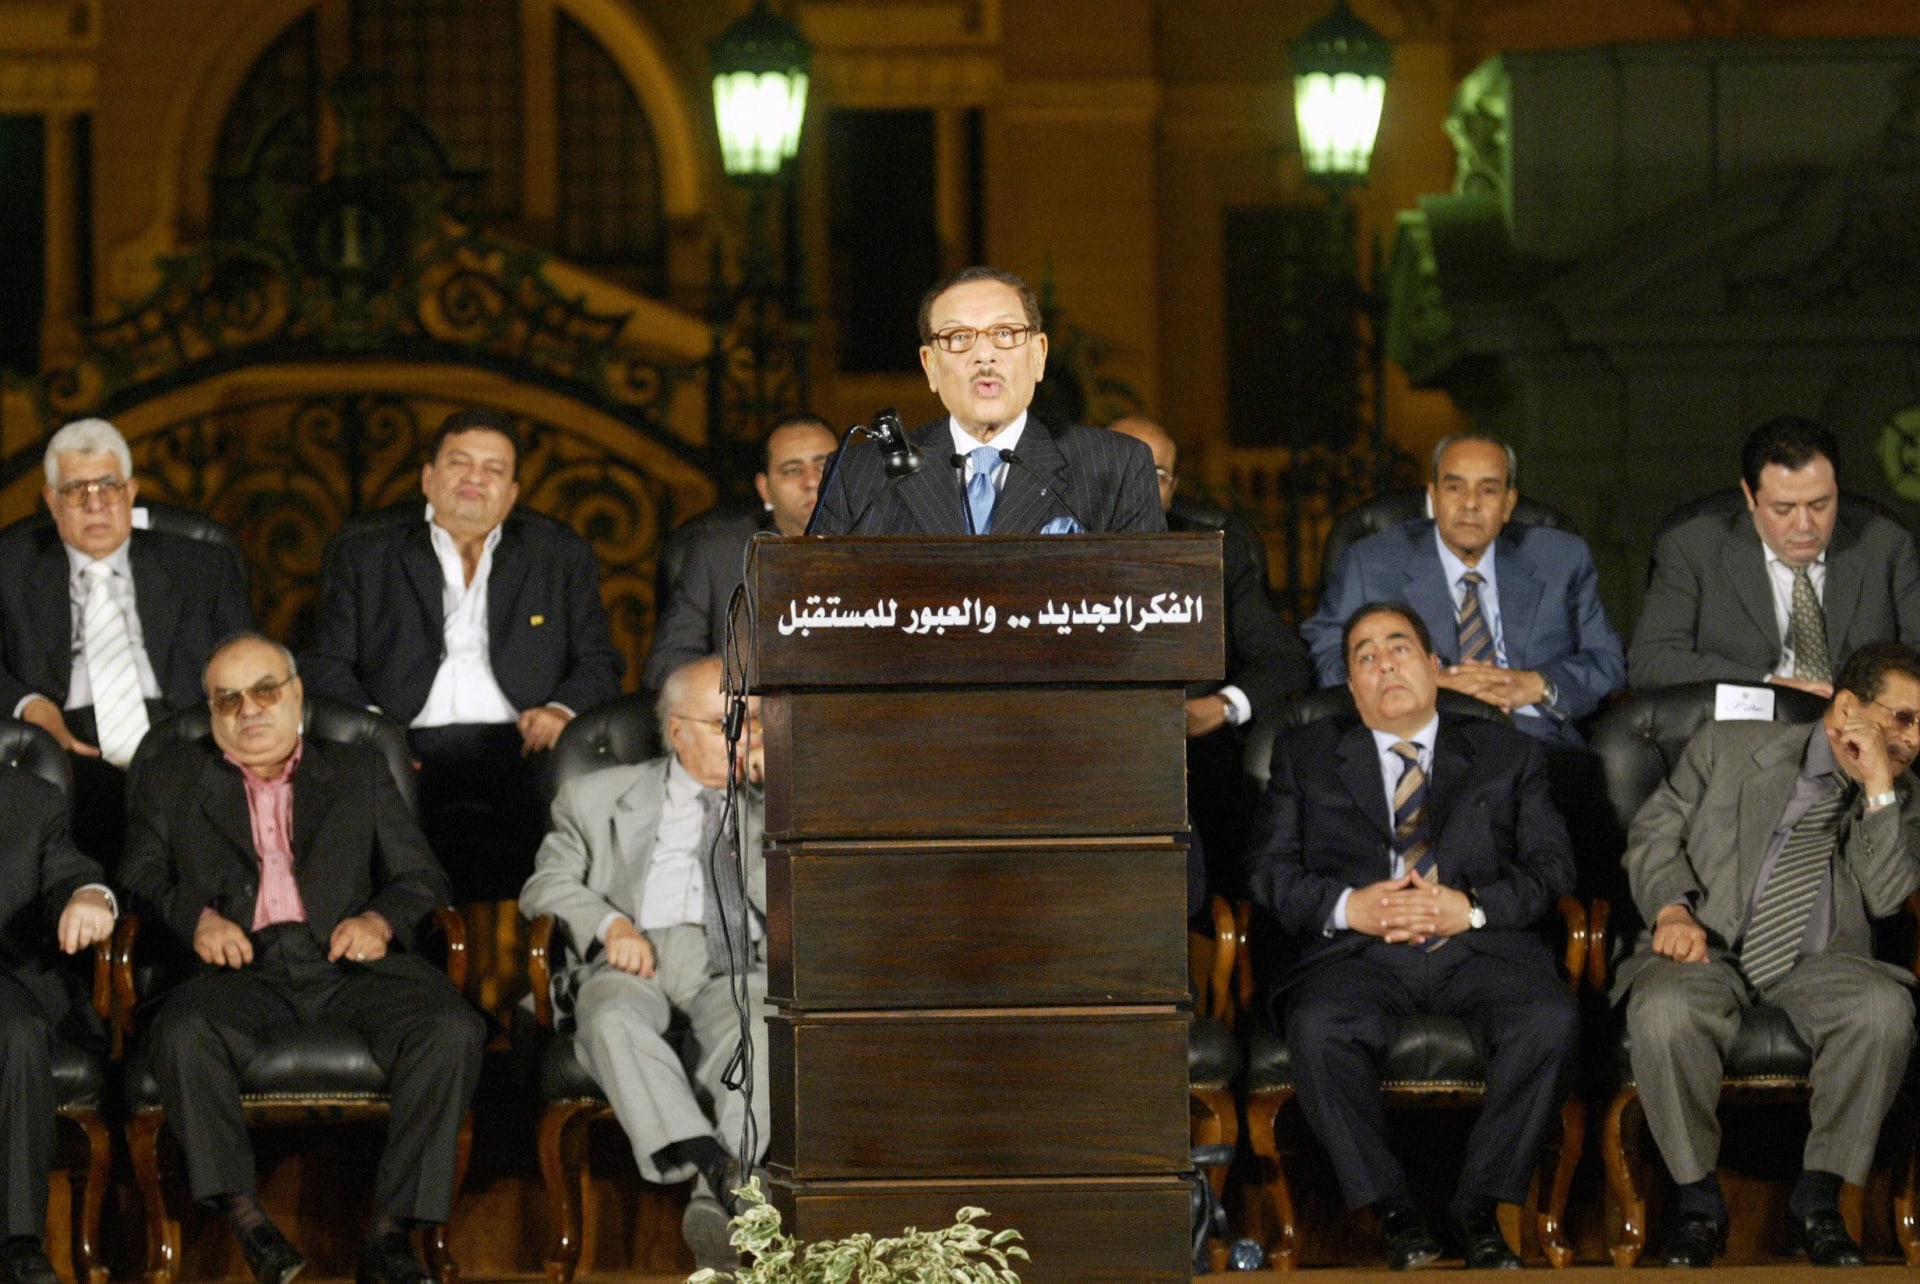 وفاة صفوت الشريف وزير الإعلام ورئيس مجلس الشورى المصري السابق